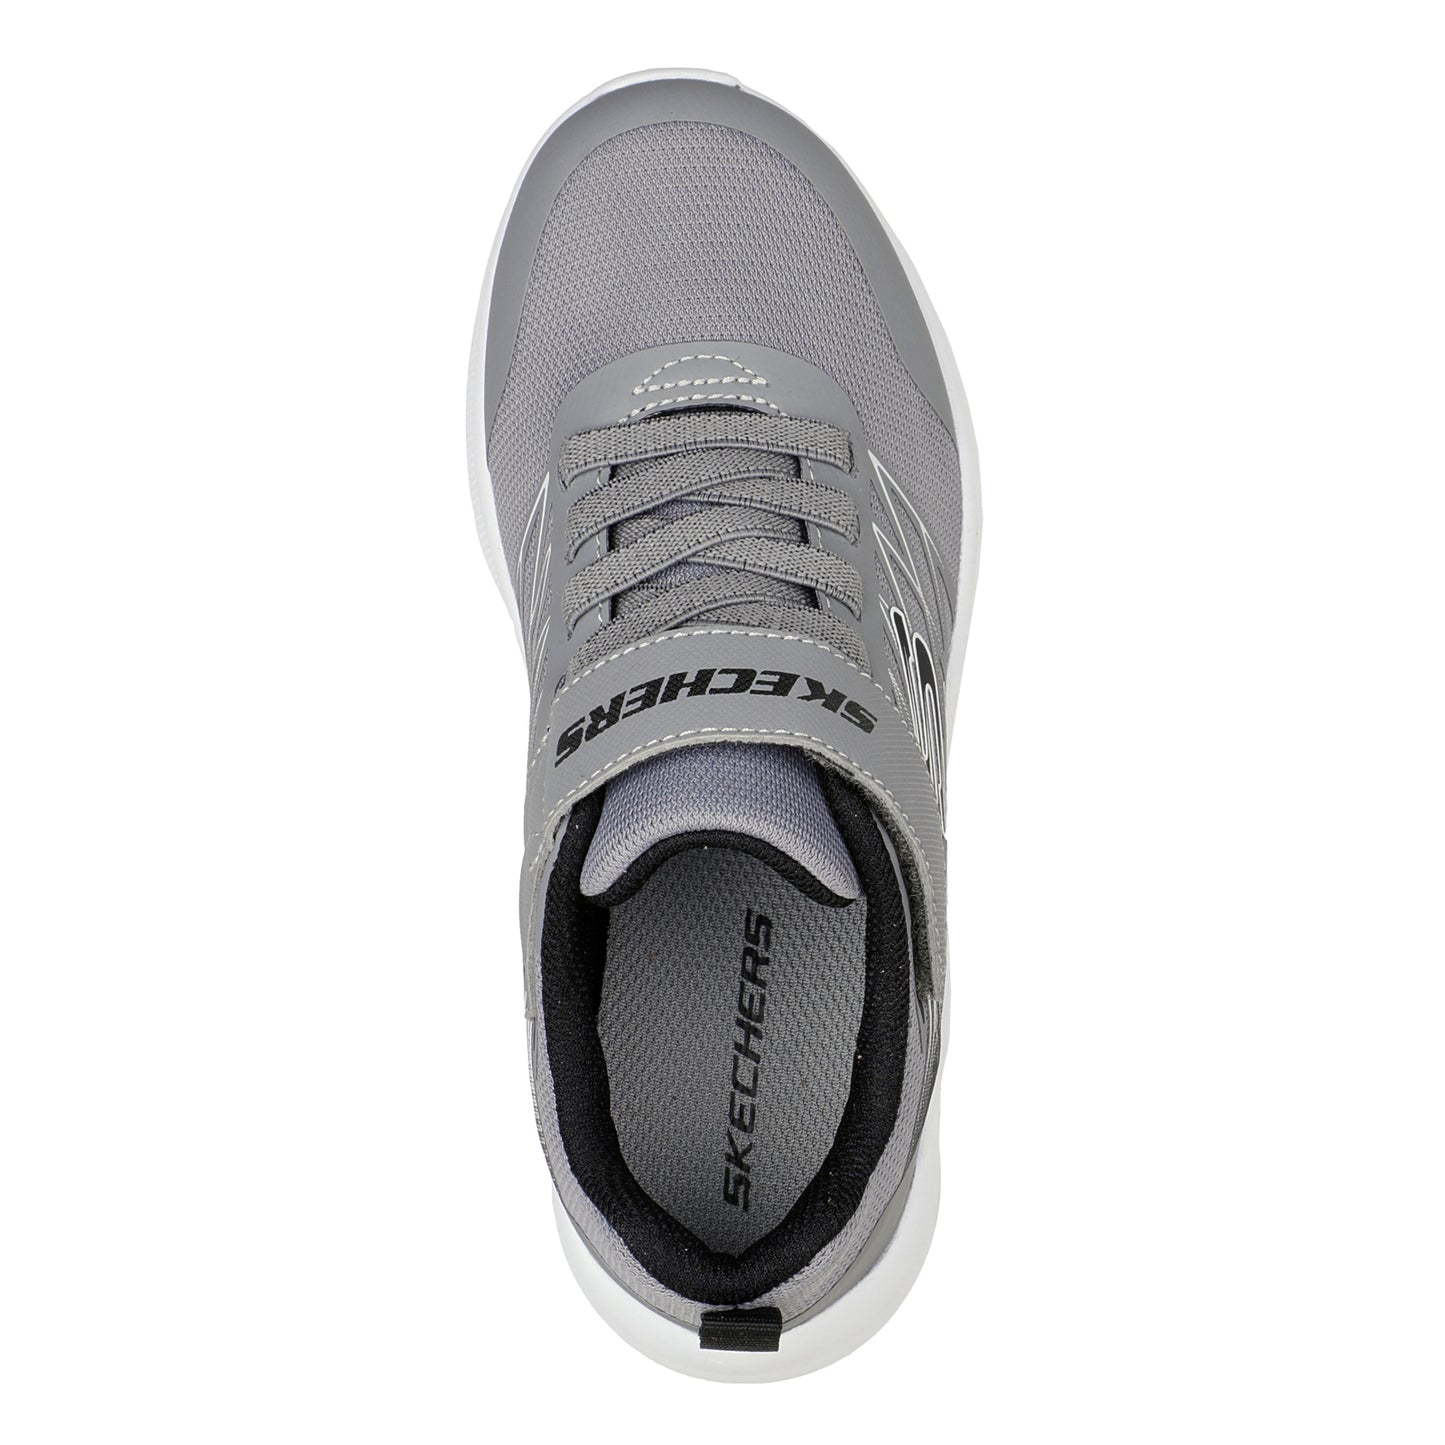 Peltz Shoes  Boy's Skechers Microspec - Texlor Sneaker - Little Kid & Big Kid Grey/Black 403770L-GYBK